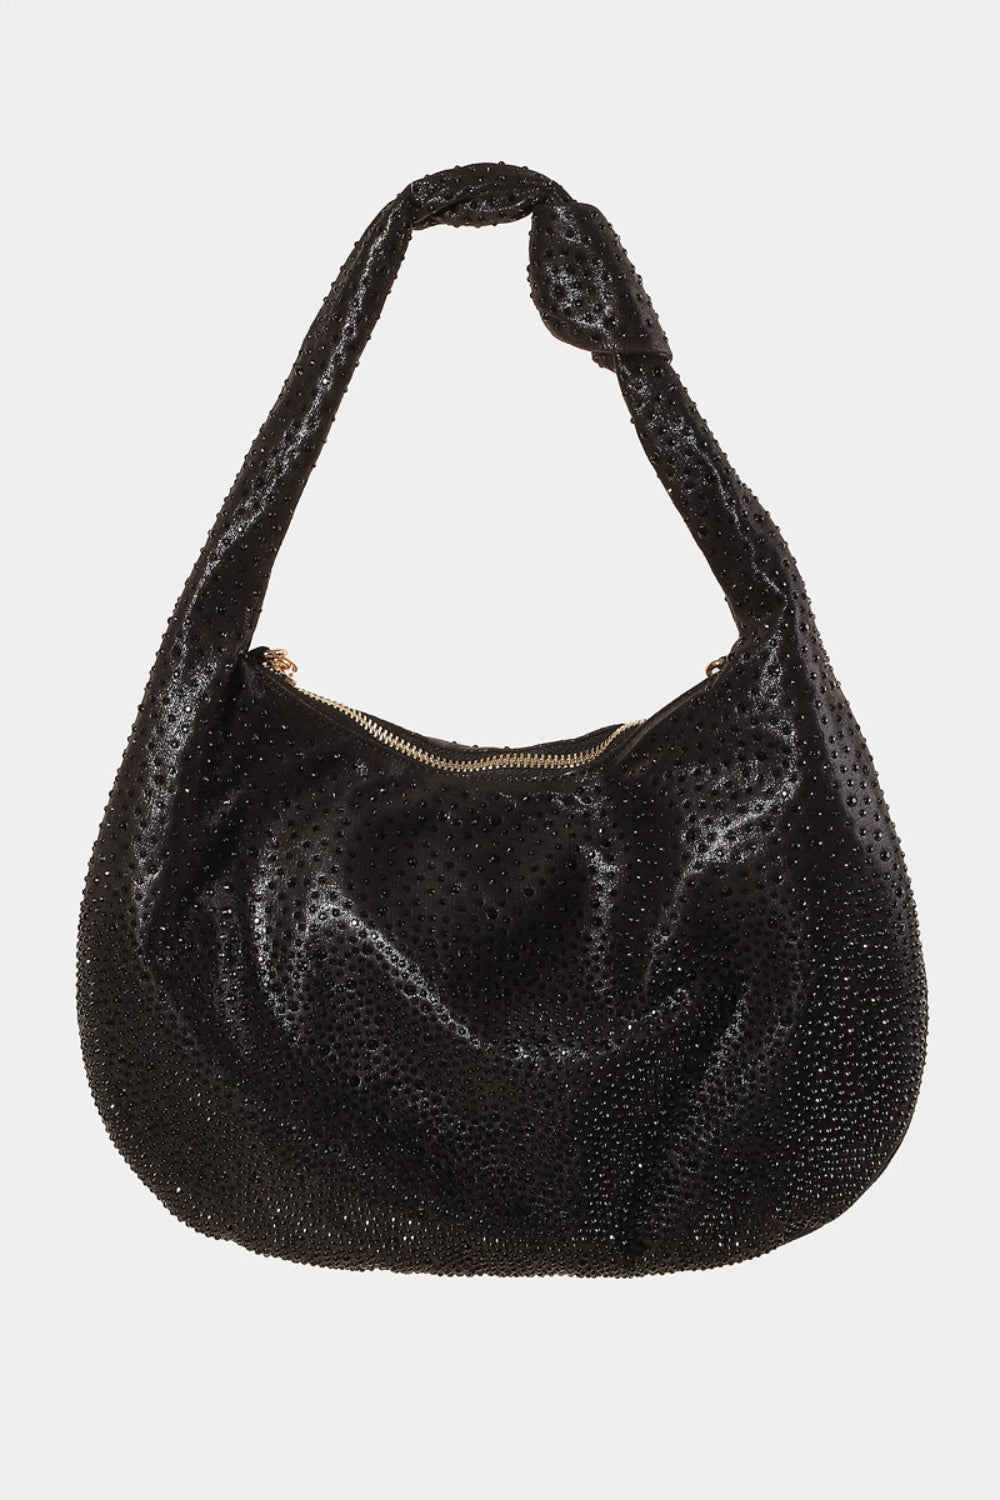 Fame Rhinestone Studded Handbag Black One Size 